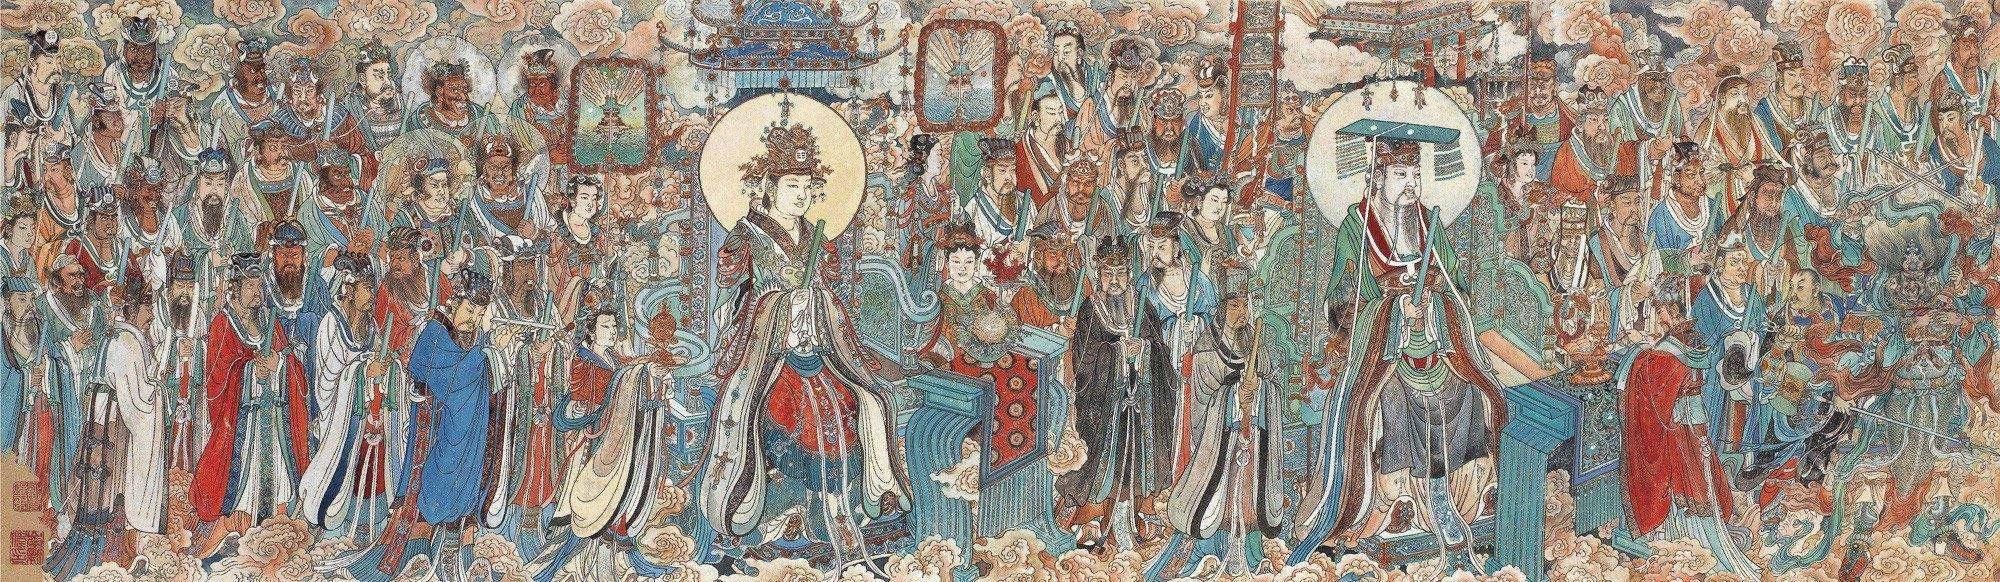 中国道教全真三大祖庭,其各自的来历及其与道教的渊源